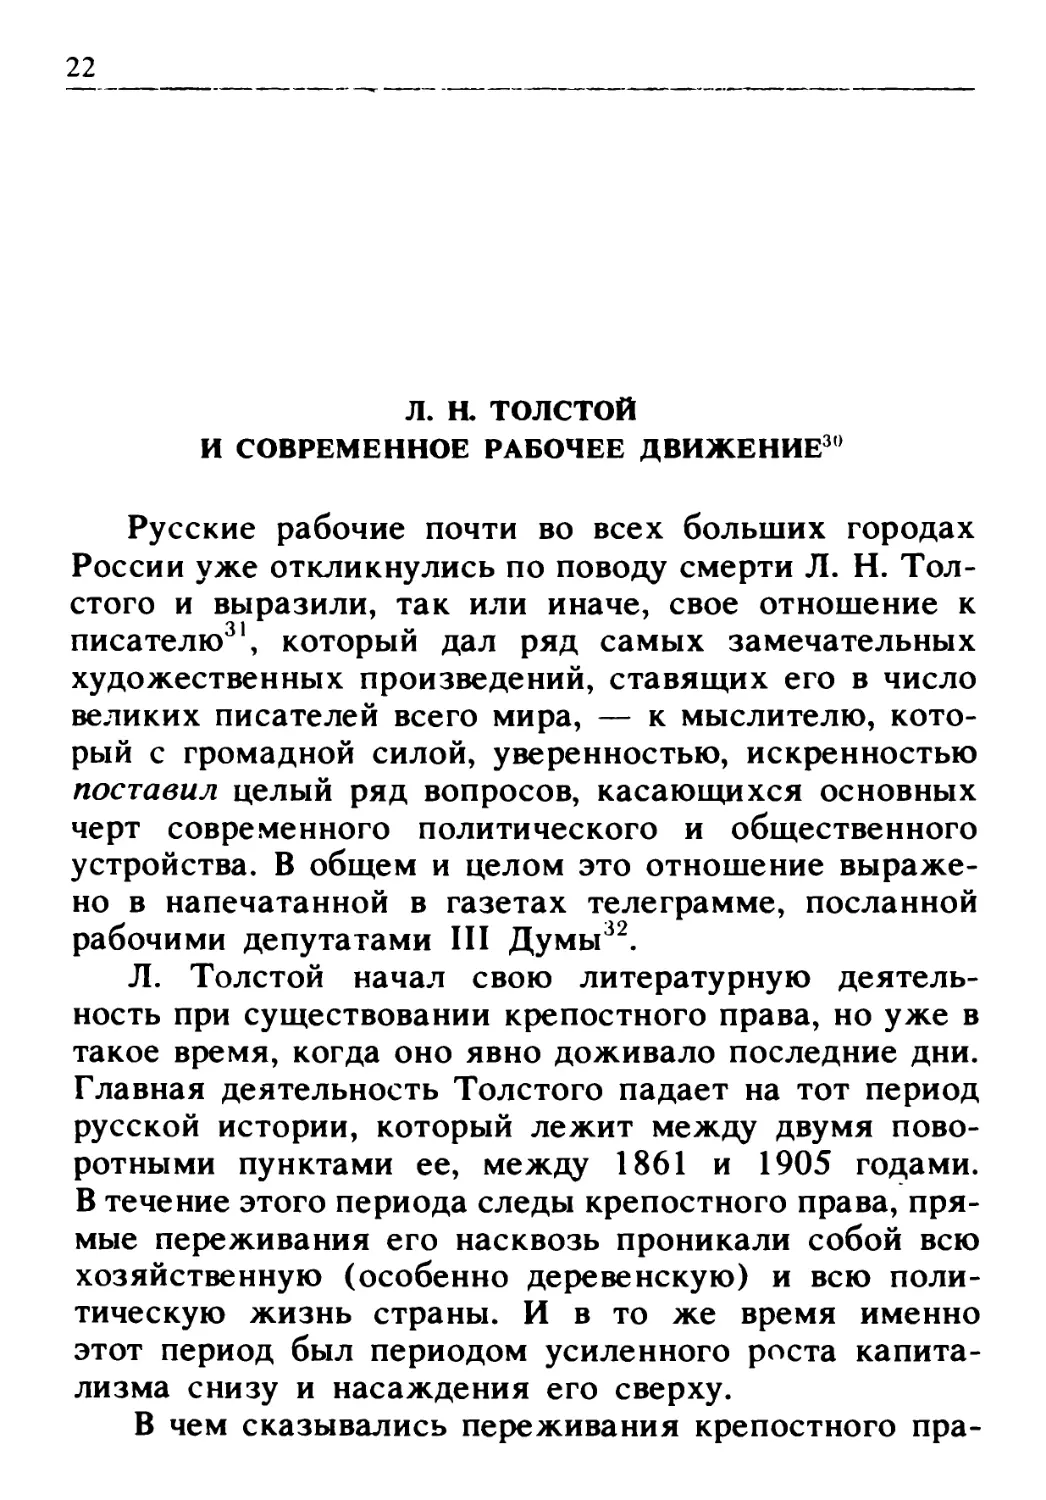 Л.Н.Толстой и современное рабочее движение